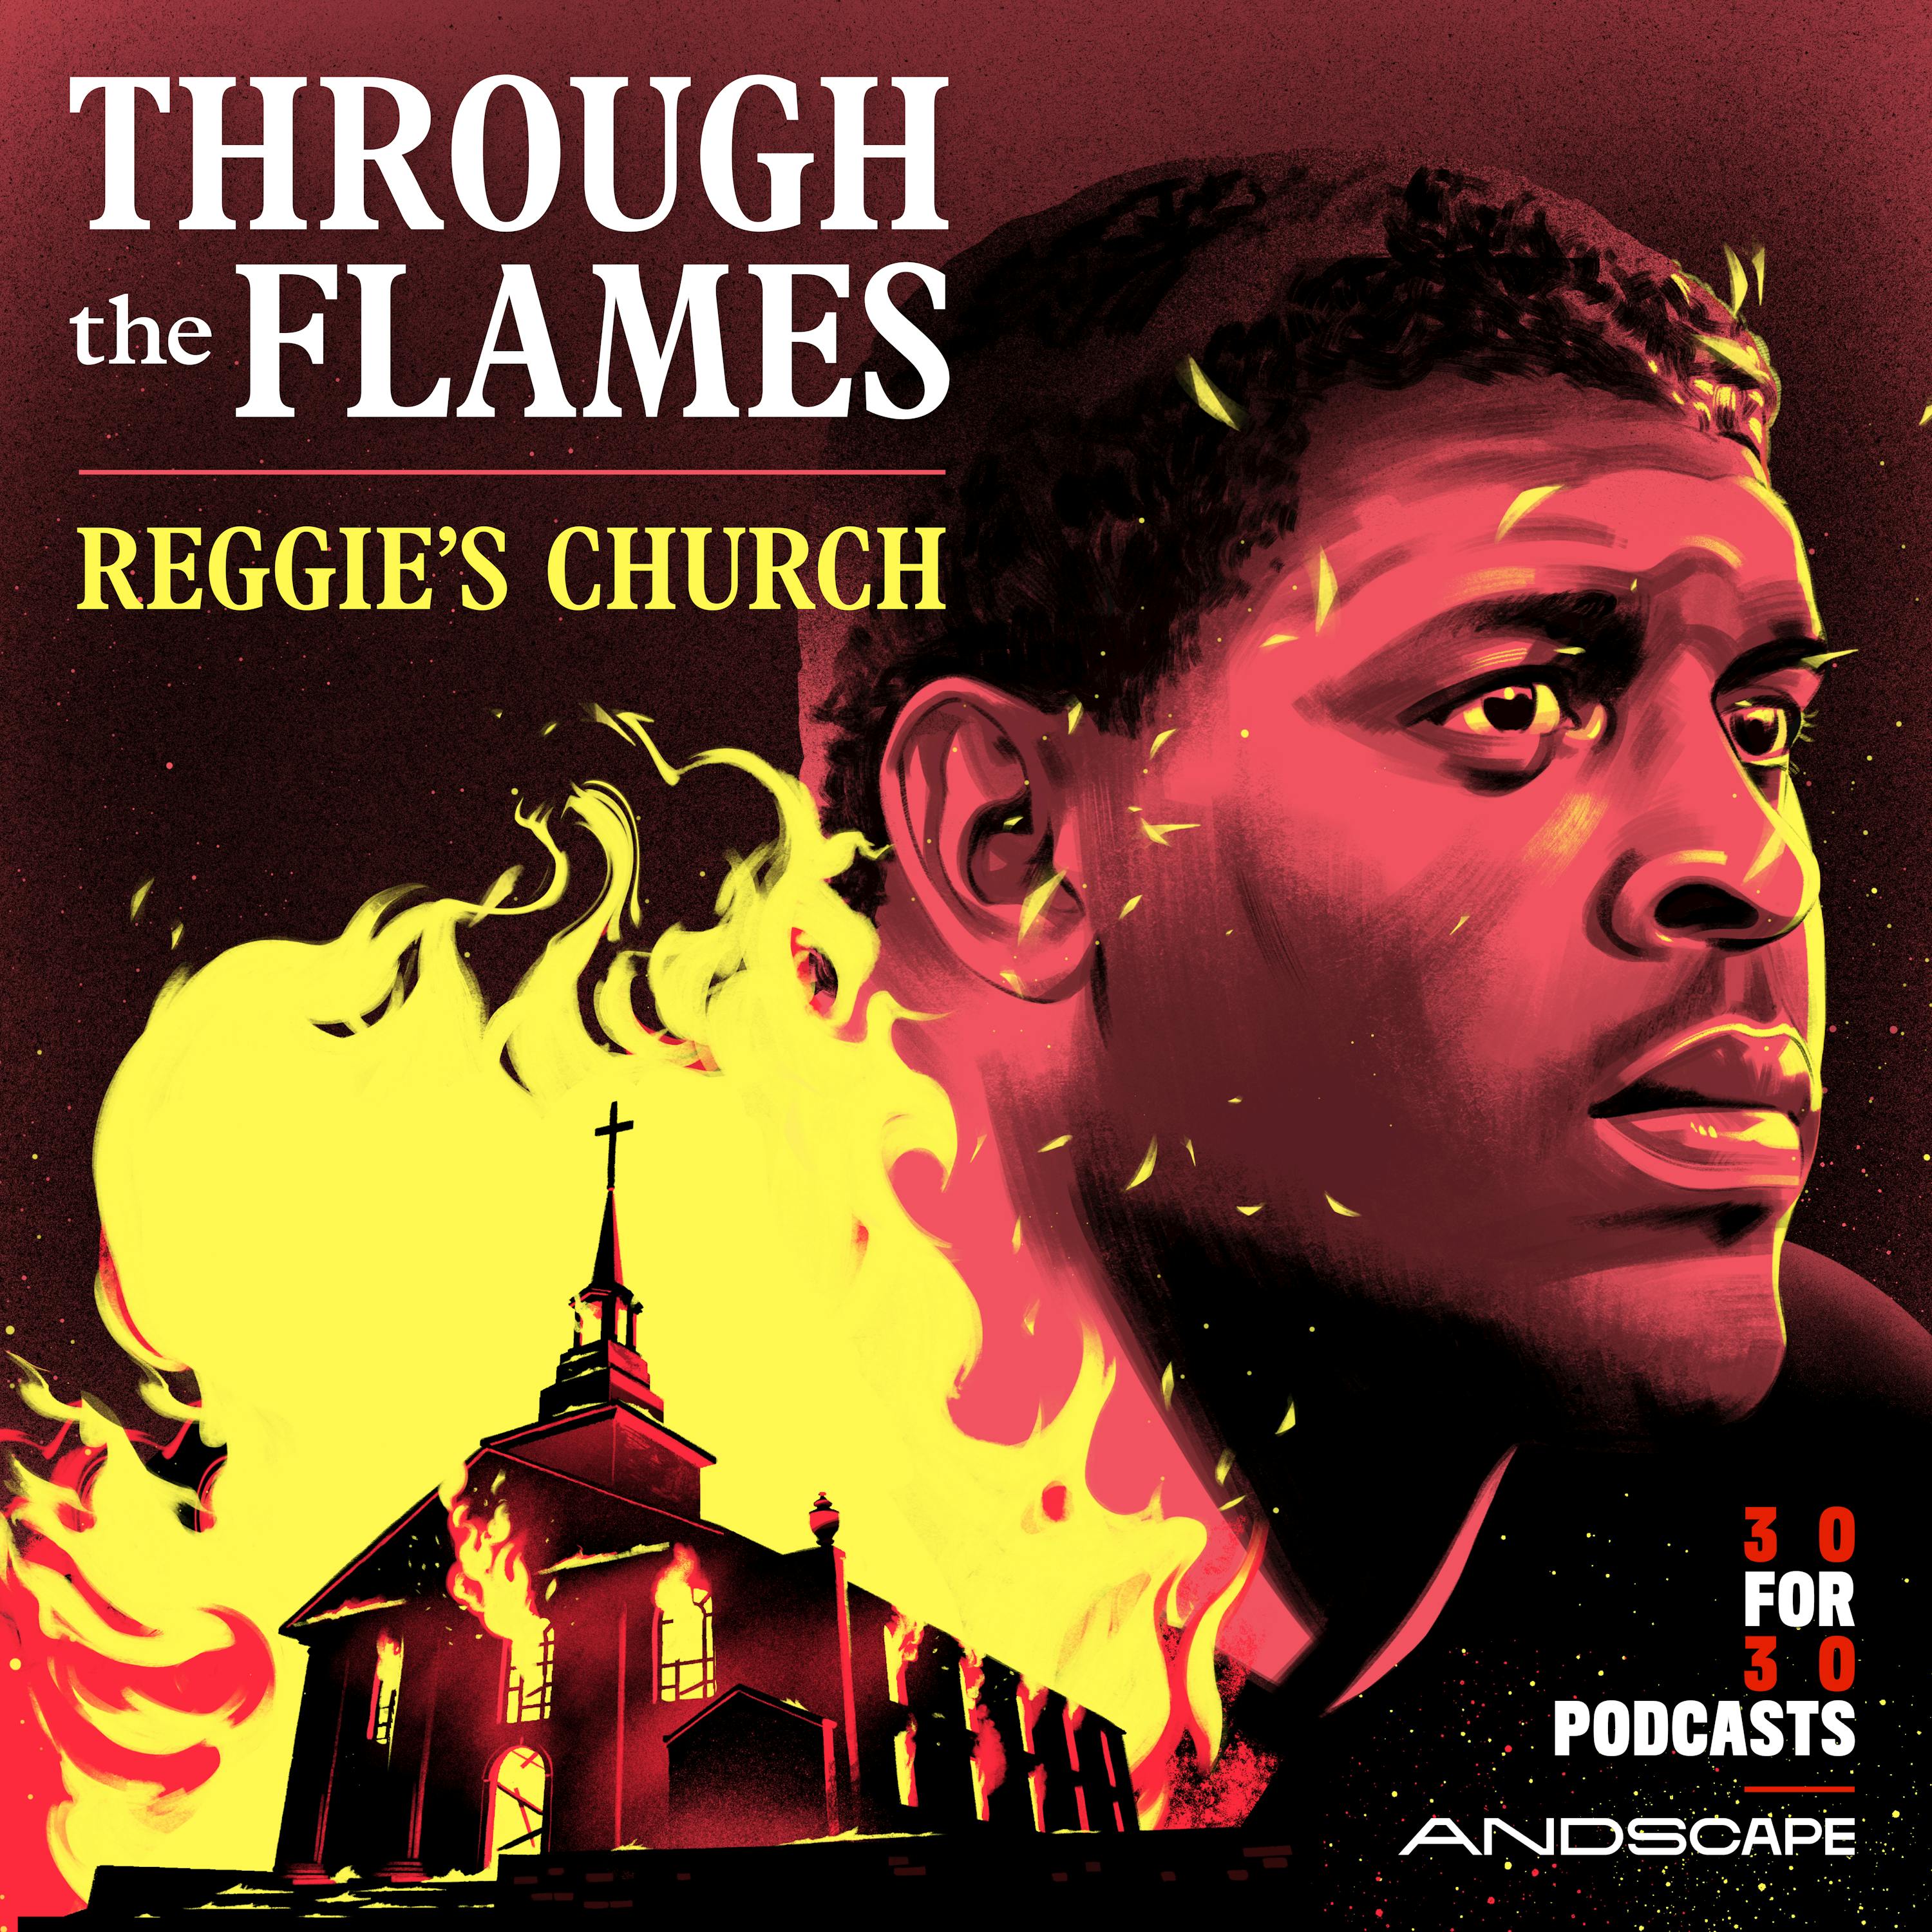 THROUGH THE FLAMES: REGGIE’S CHURCH